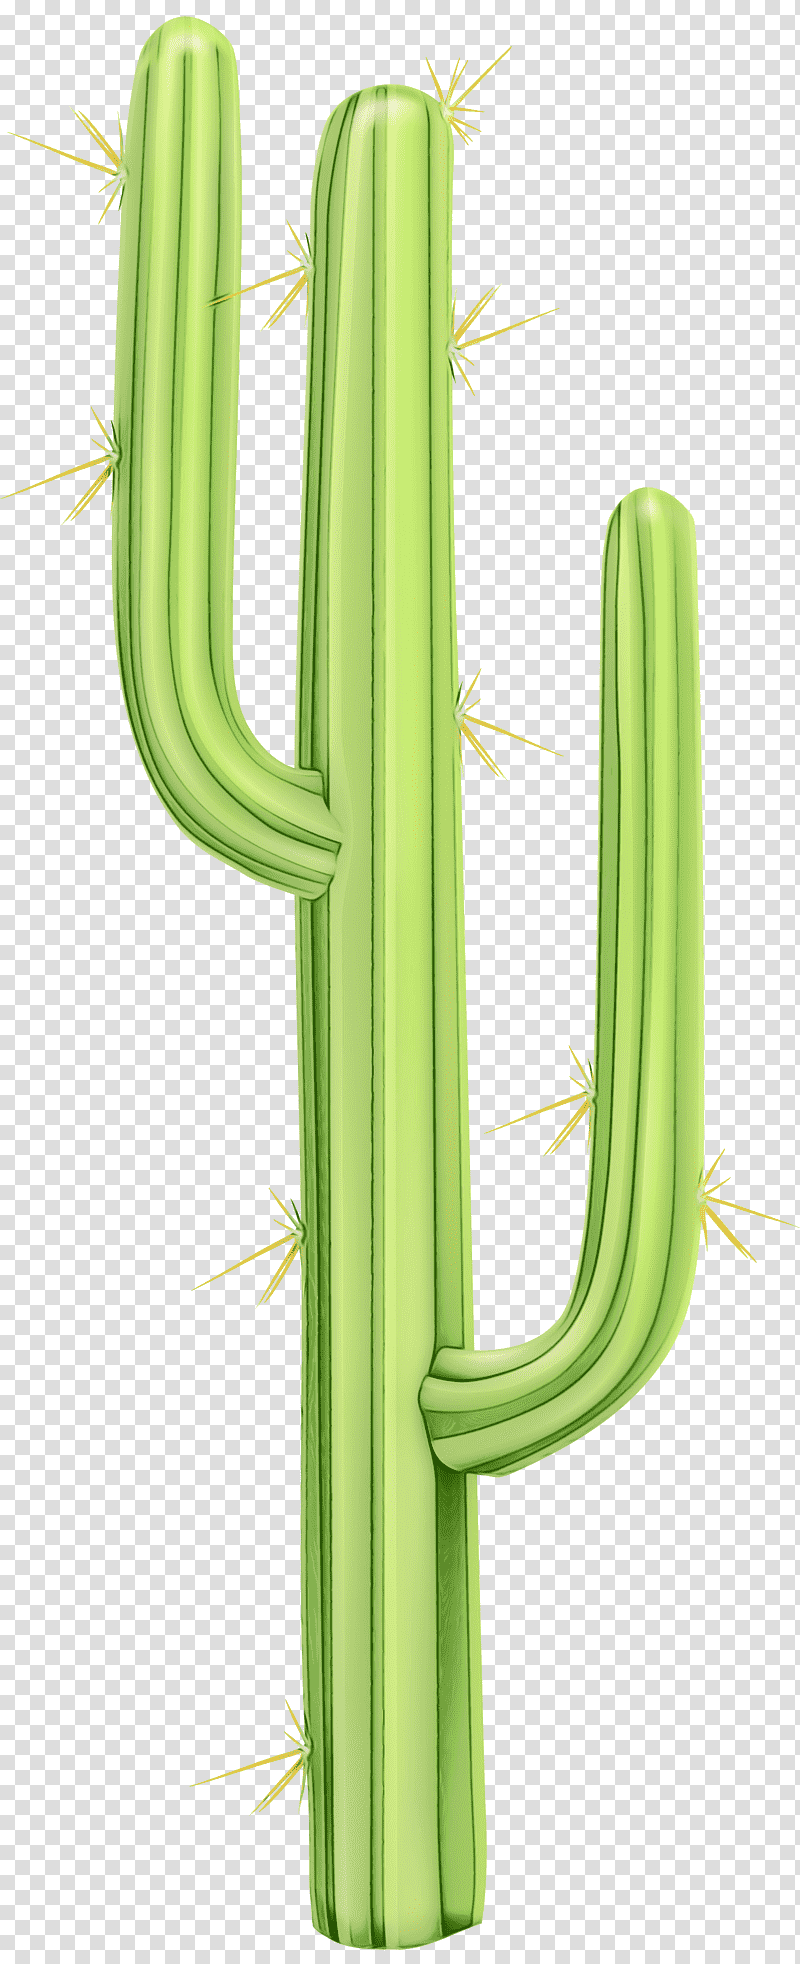 Cactus, Watercolor, Paint, Wet Ink, Plant Stem, Strawberry Hedgehog Cactus, Grasses transparent background PNG clipart